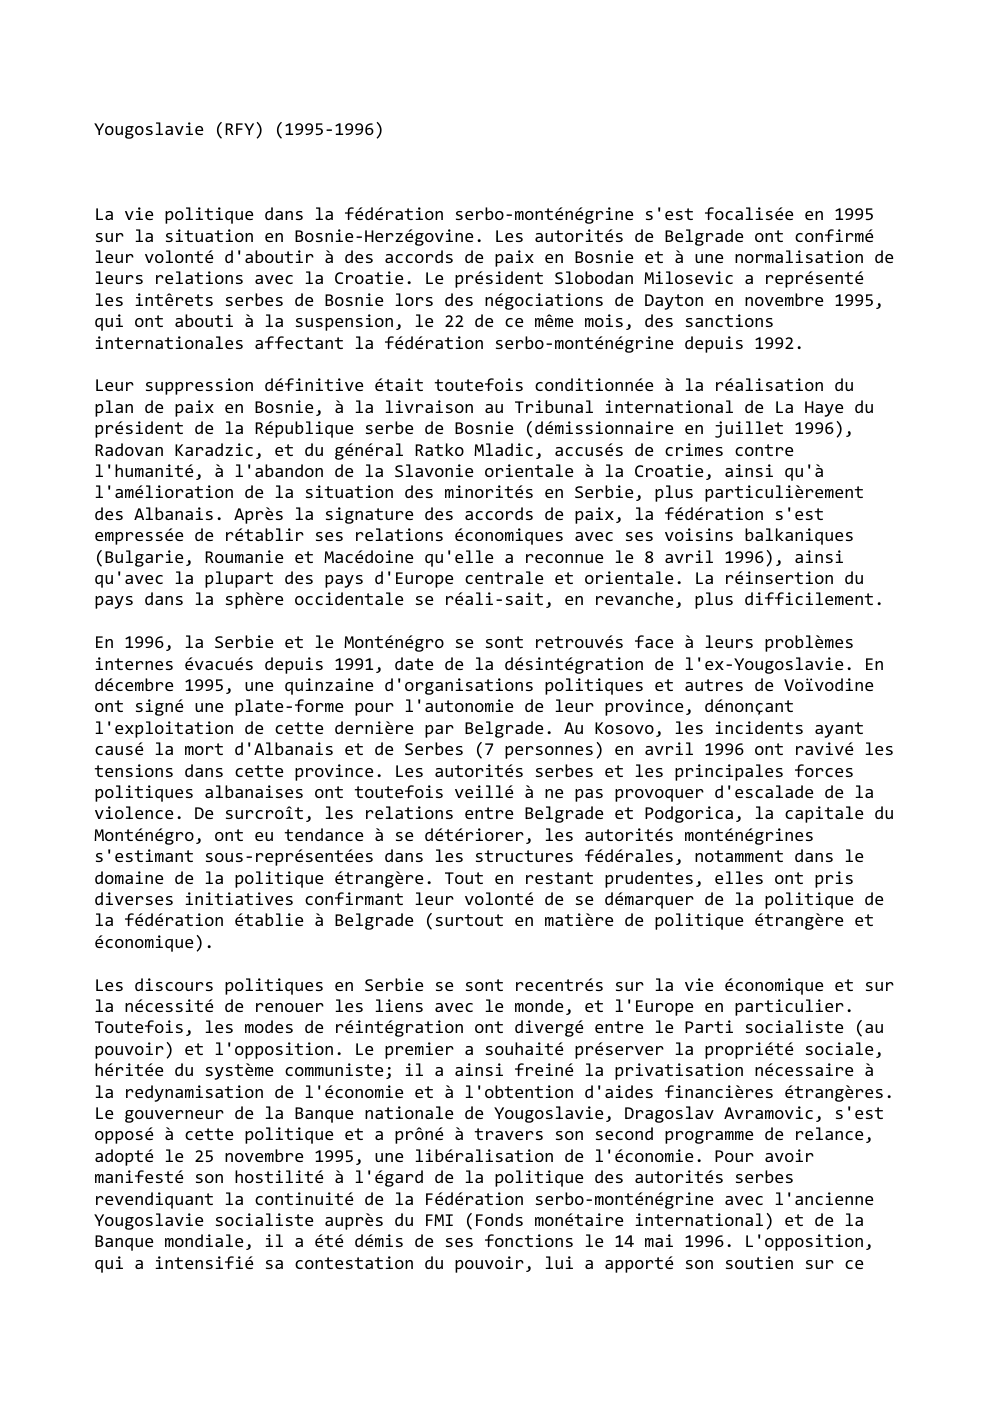 Prévisualisation du document Yougoslavie (RFY) (1995-1996)

La vie politique dans la fédération serbo-monténégrine s'est focalisée en 1995
sur la situation en Bosnie-Herzégovine. Les...